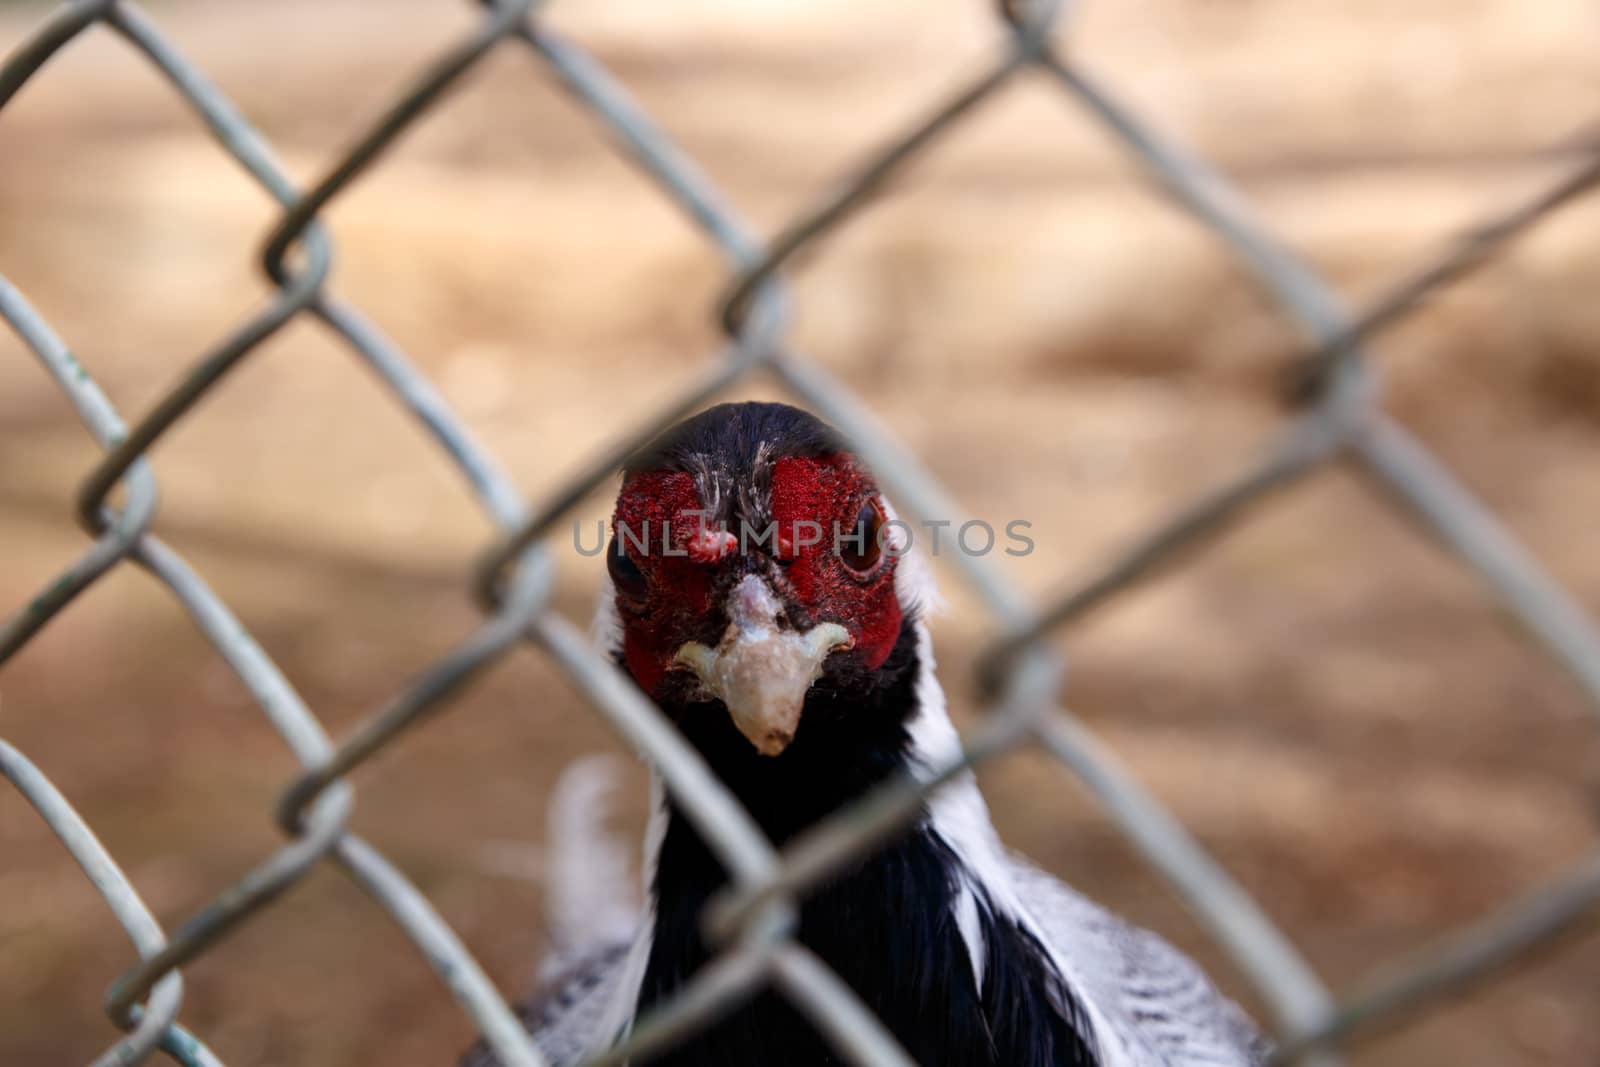 Rooster in Zoo by niglaynike